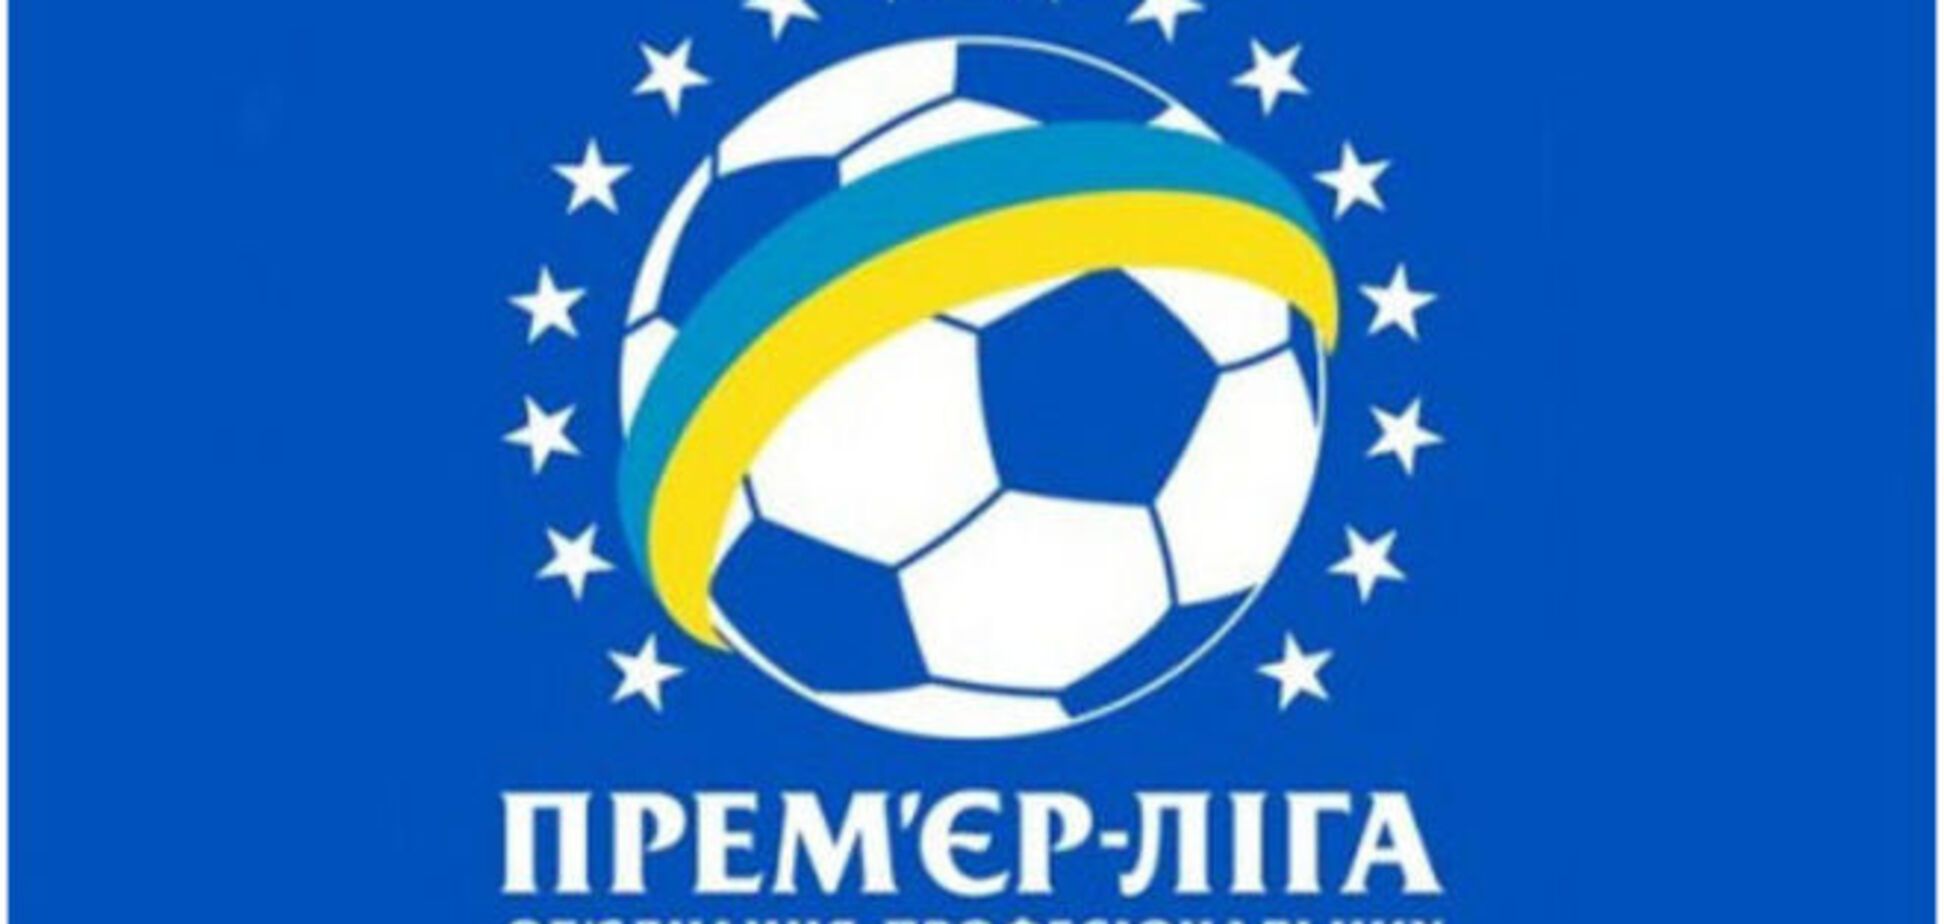 Неполуческу: затверджено формат чемпіонату України на сезон 2015/16